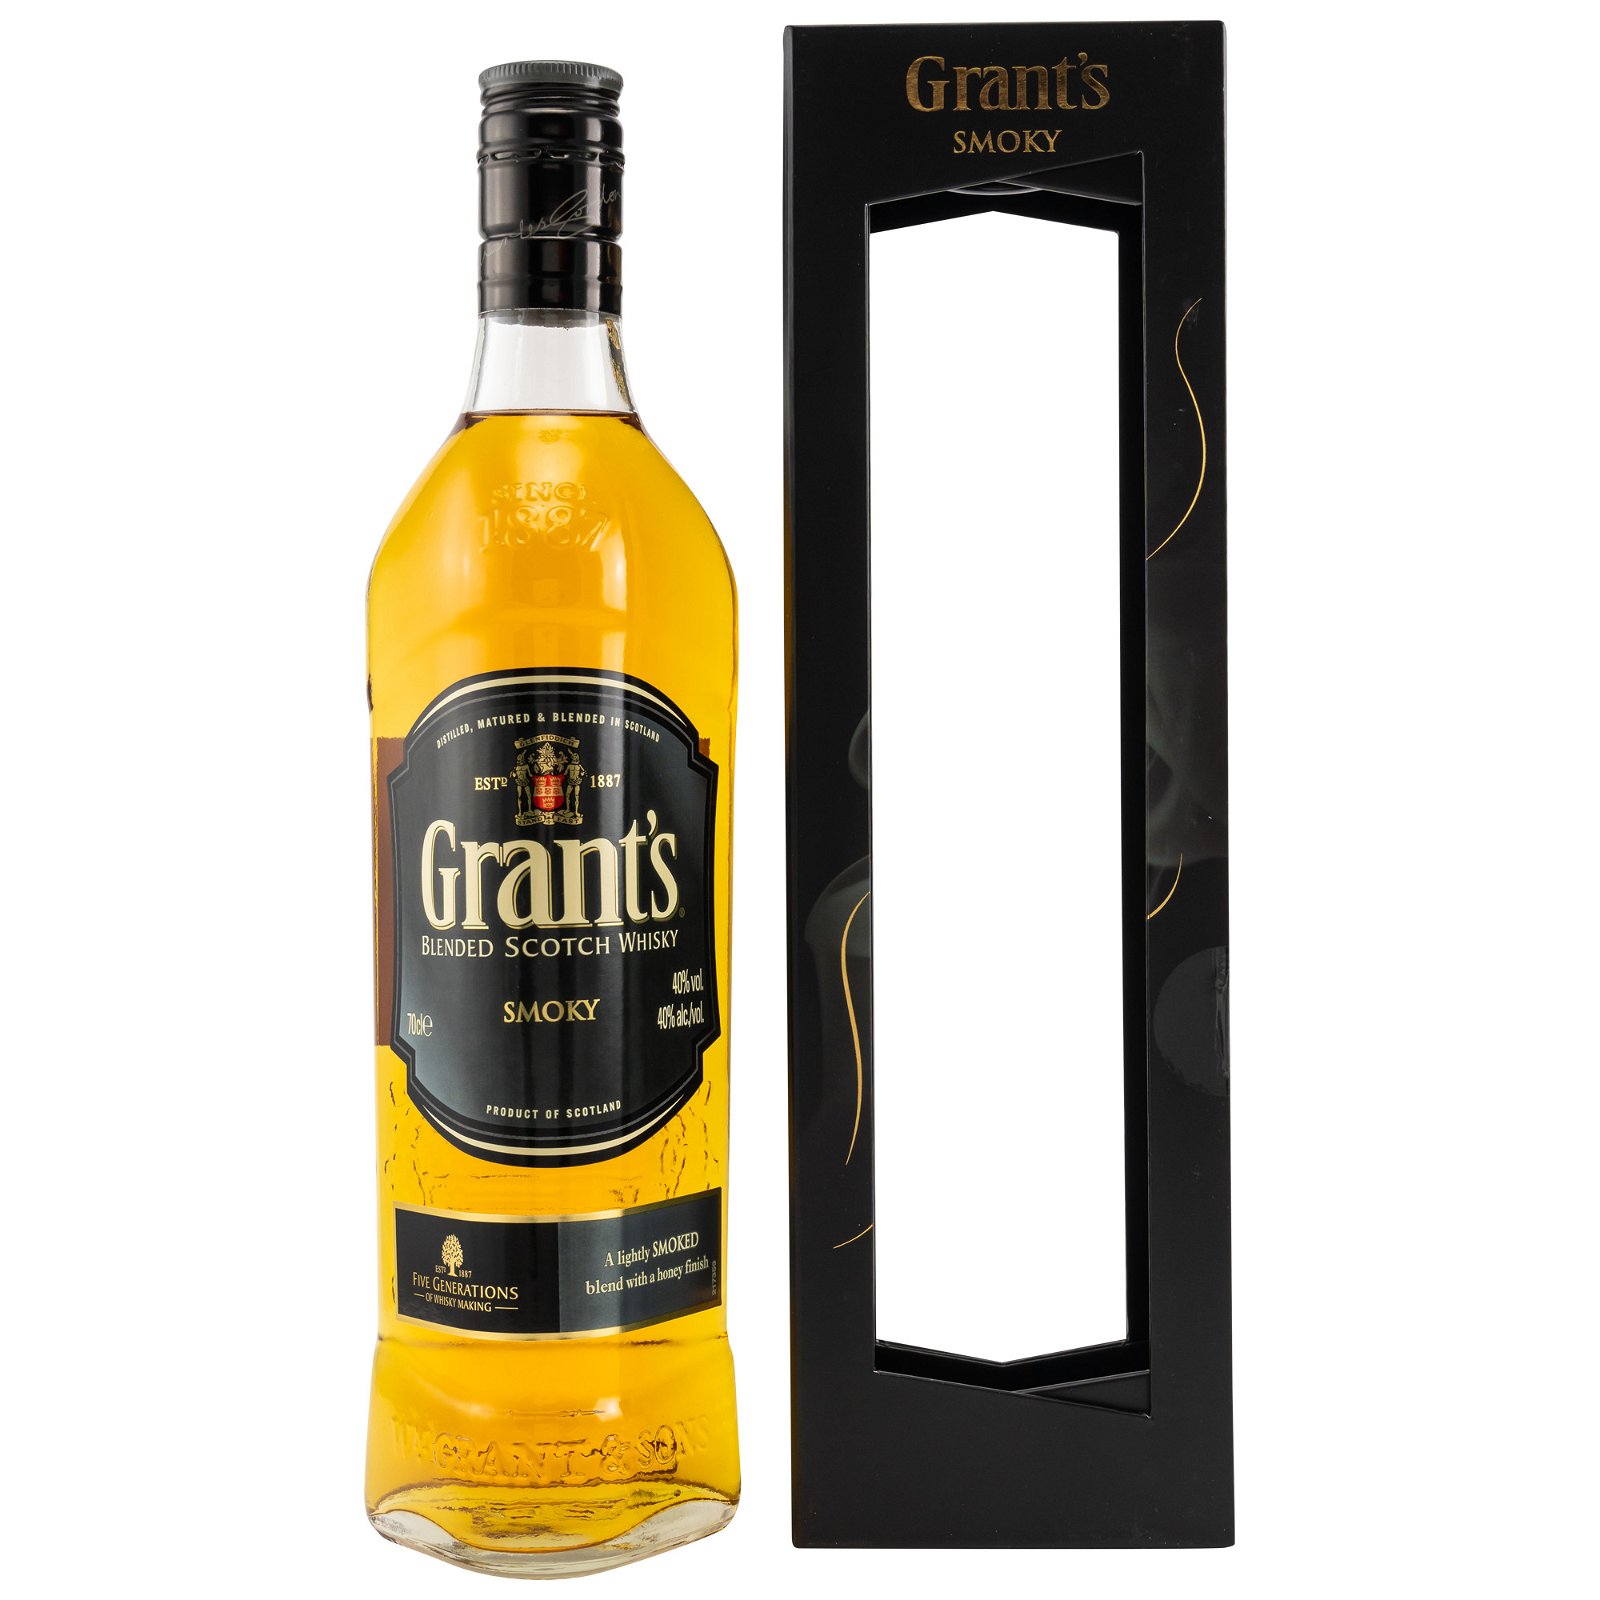 Grants Smoky Blended Scotch